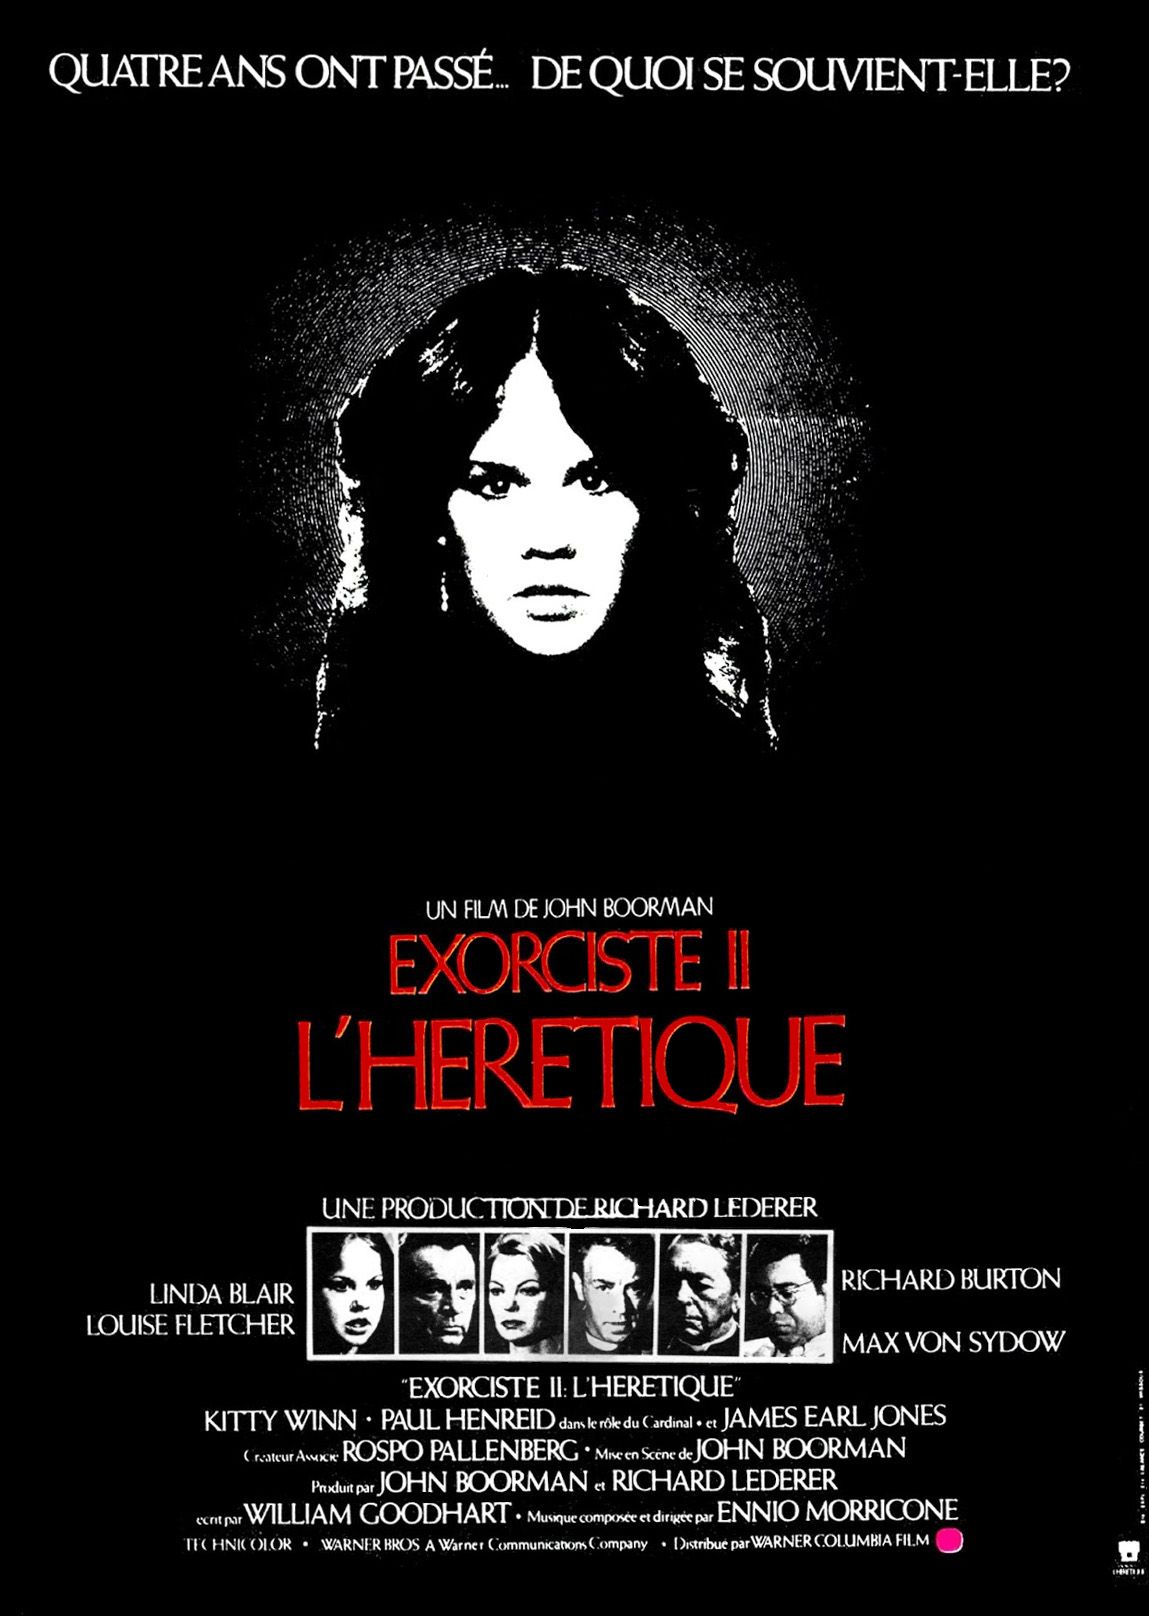 Lexorciste 2 Lhérétique Film 1977 Senscritique 9103